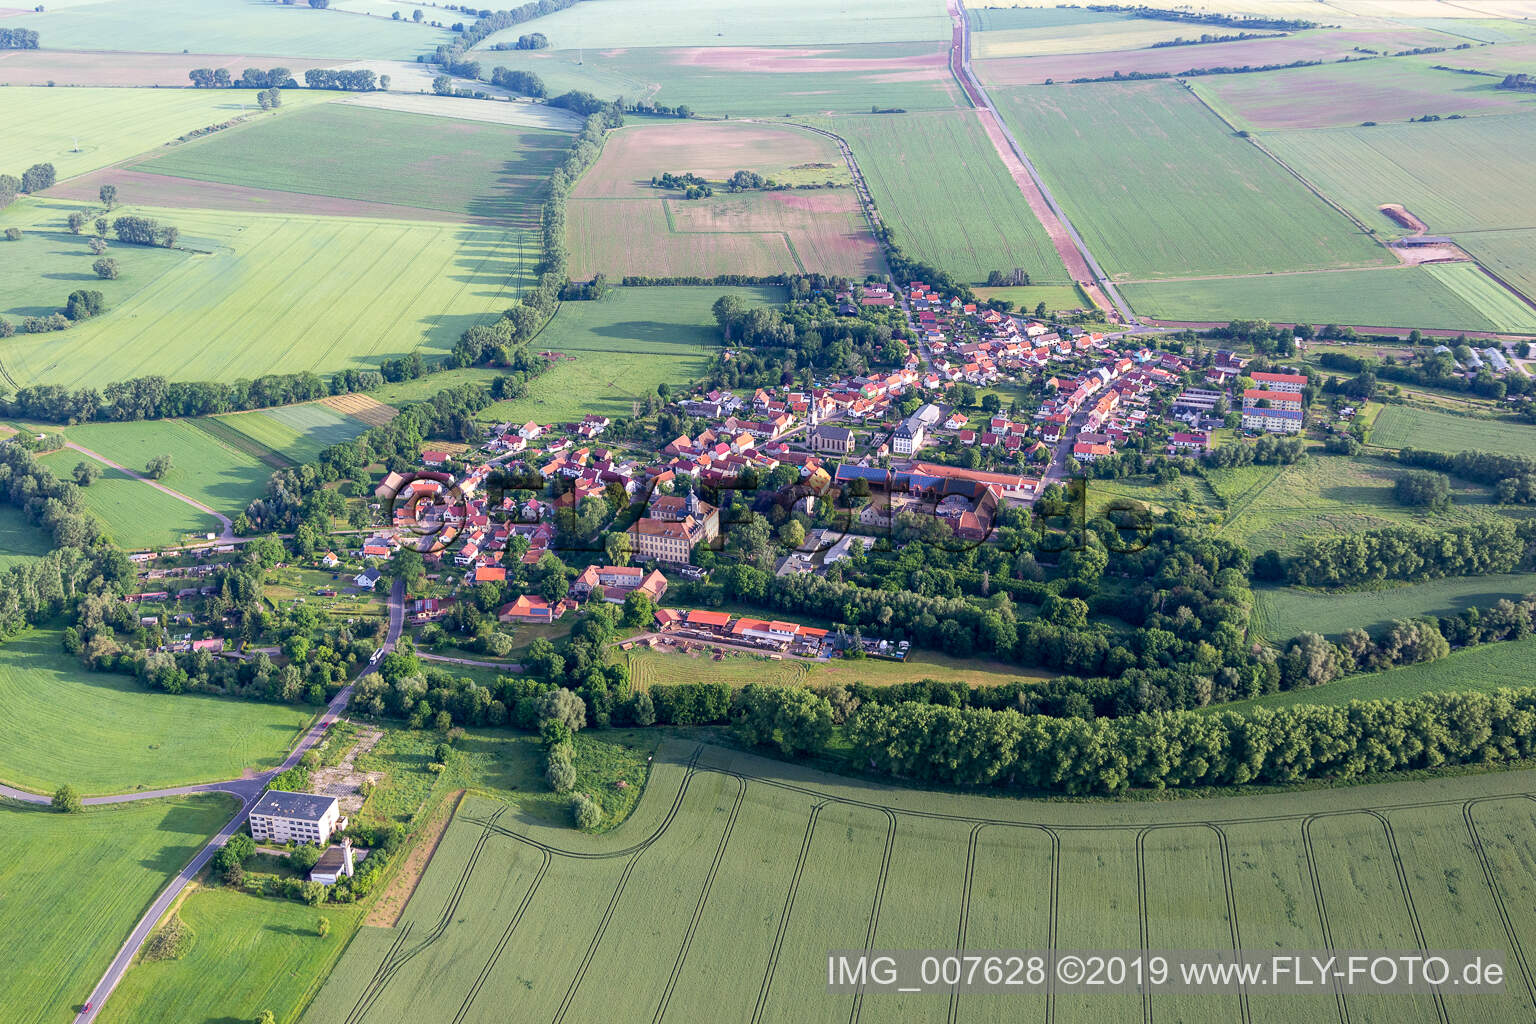 Vue aérienne de Friedrichswerth dans le département Thuringe, Allemagne